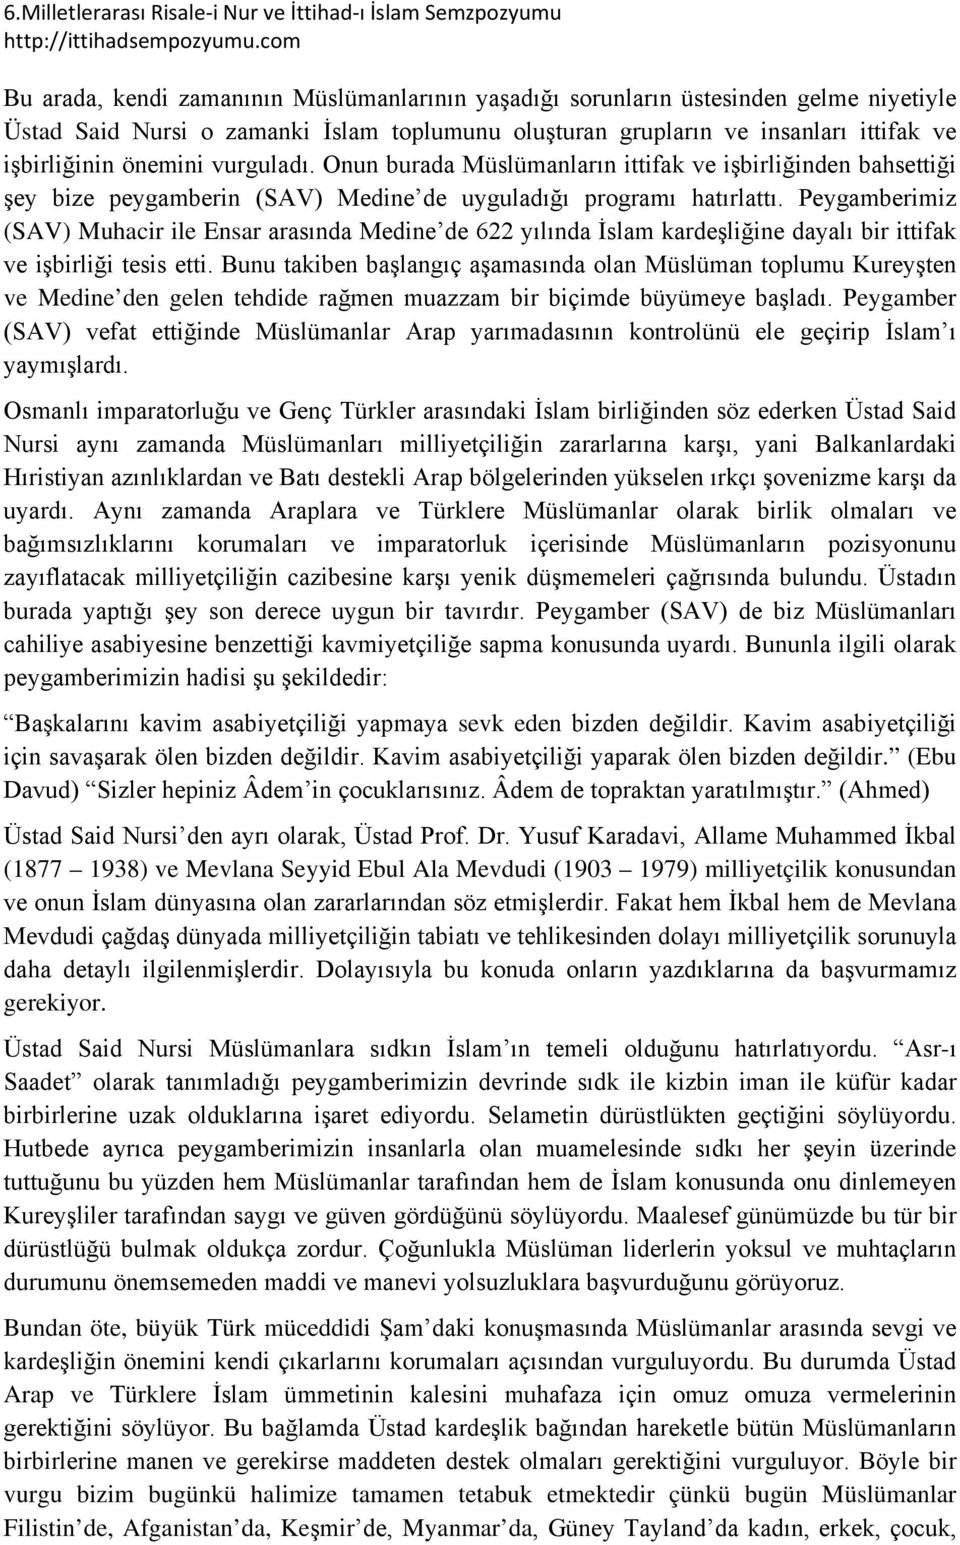 Peygamberimiz (SAV) Muhacir ile Ensar arasında Medine de 622 yılında İslam kardeşliğine dayalı bir ittifak ve işbirliği tesis etti.